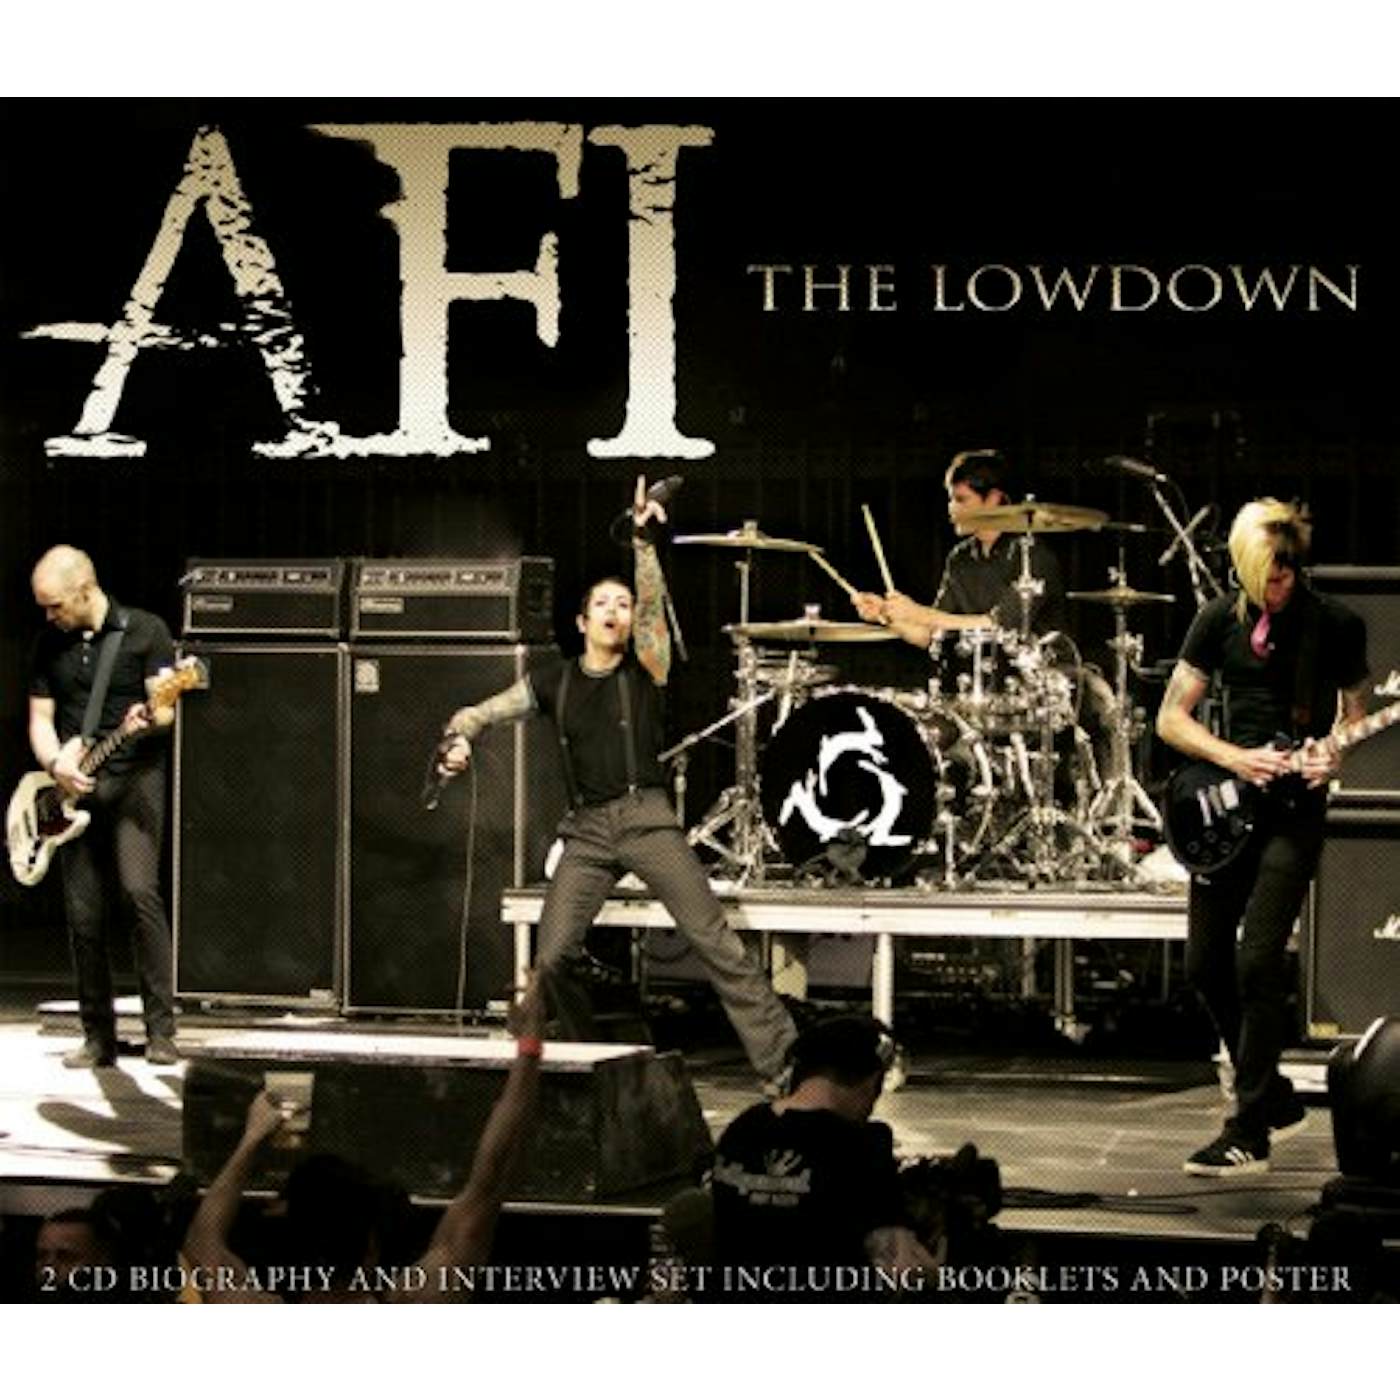 AFI LOWDOWN CD